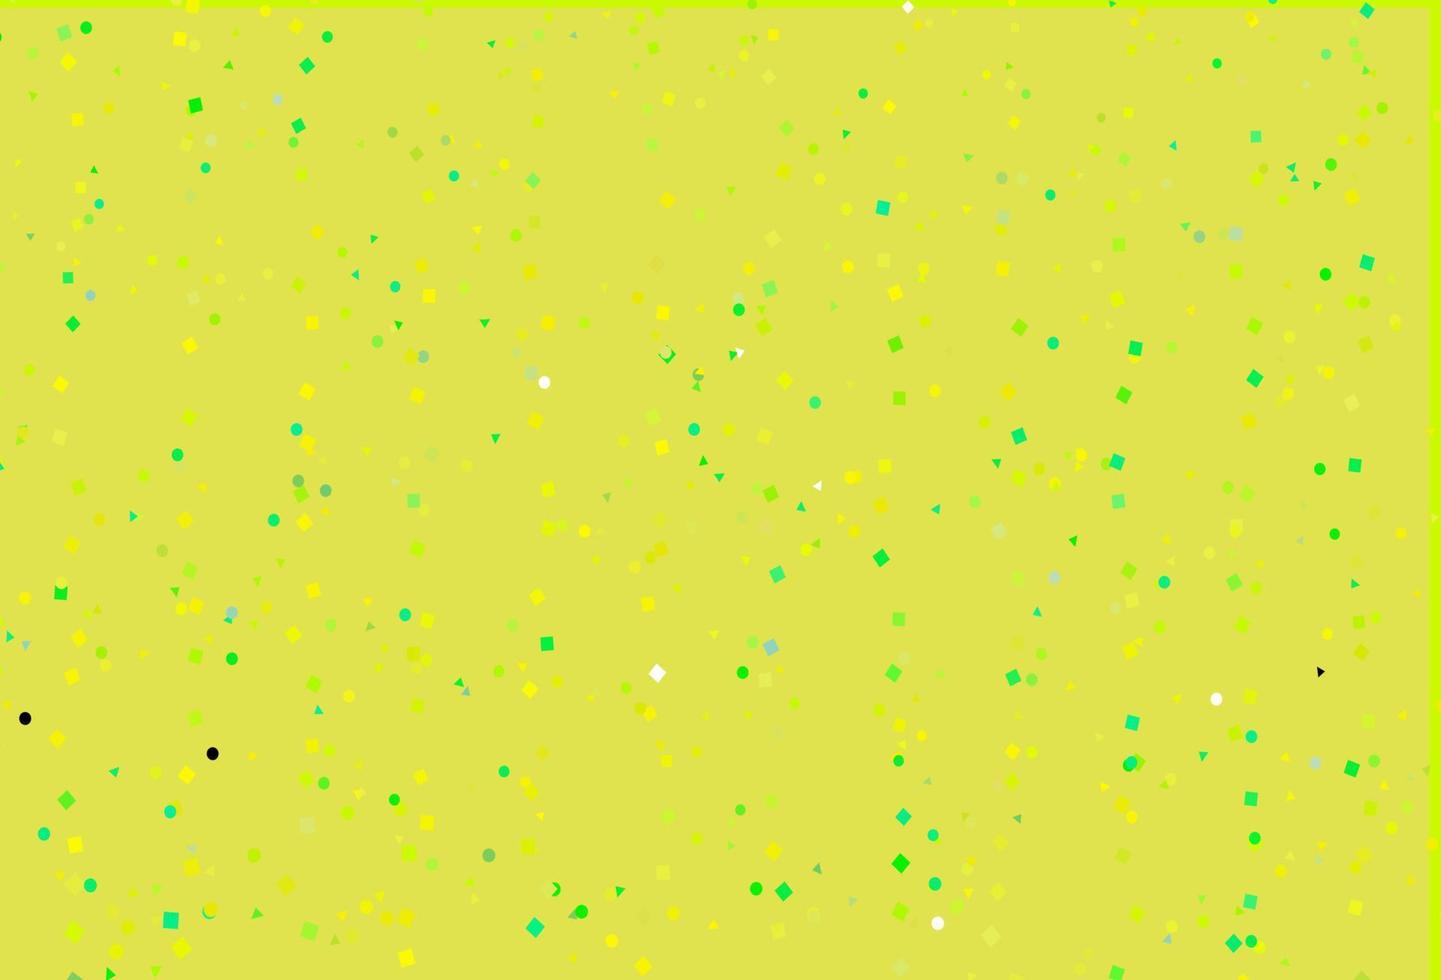 ljusgrön, gul vektormall med kristaller, cirklar, rutor. vektor